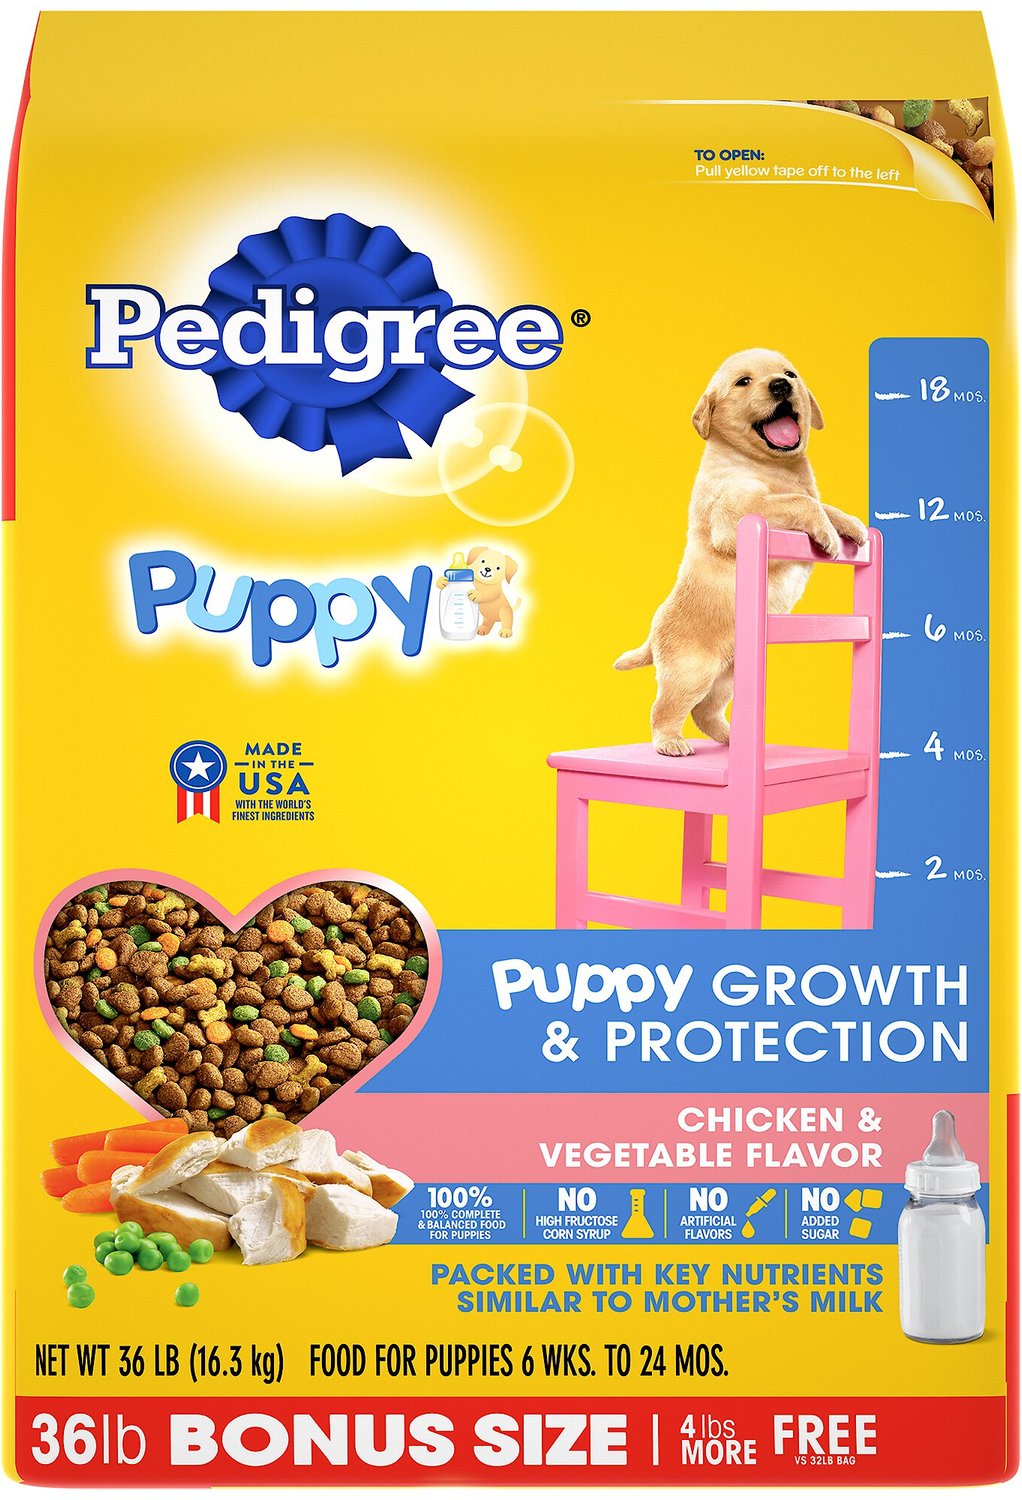 pedigree dog food small bag